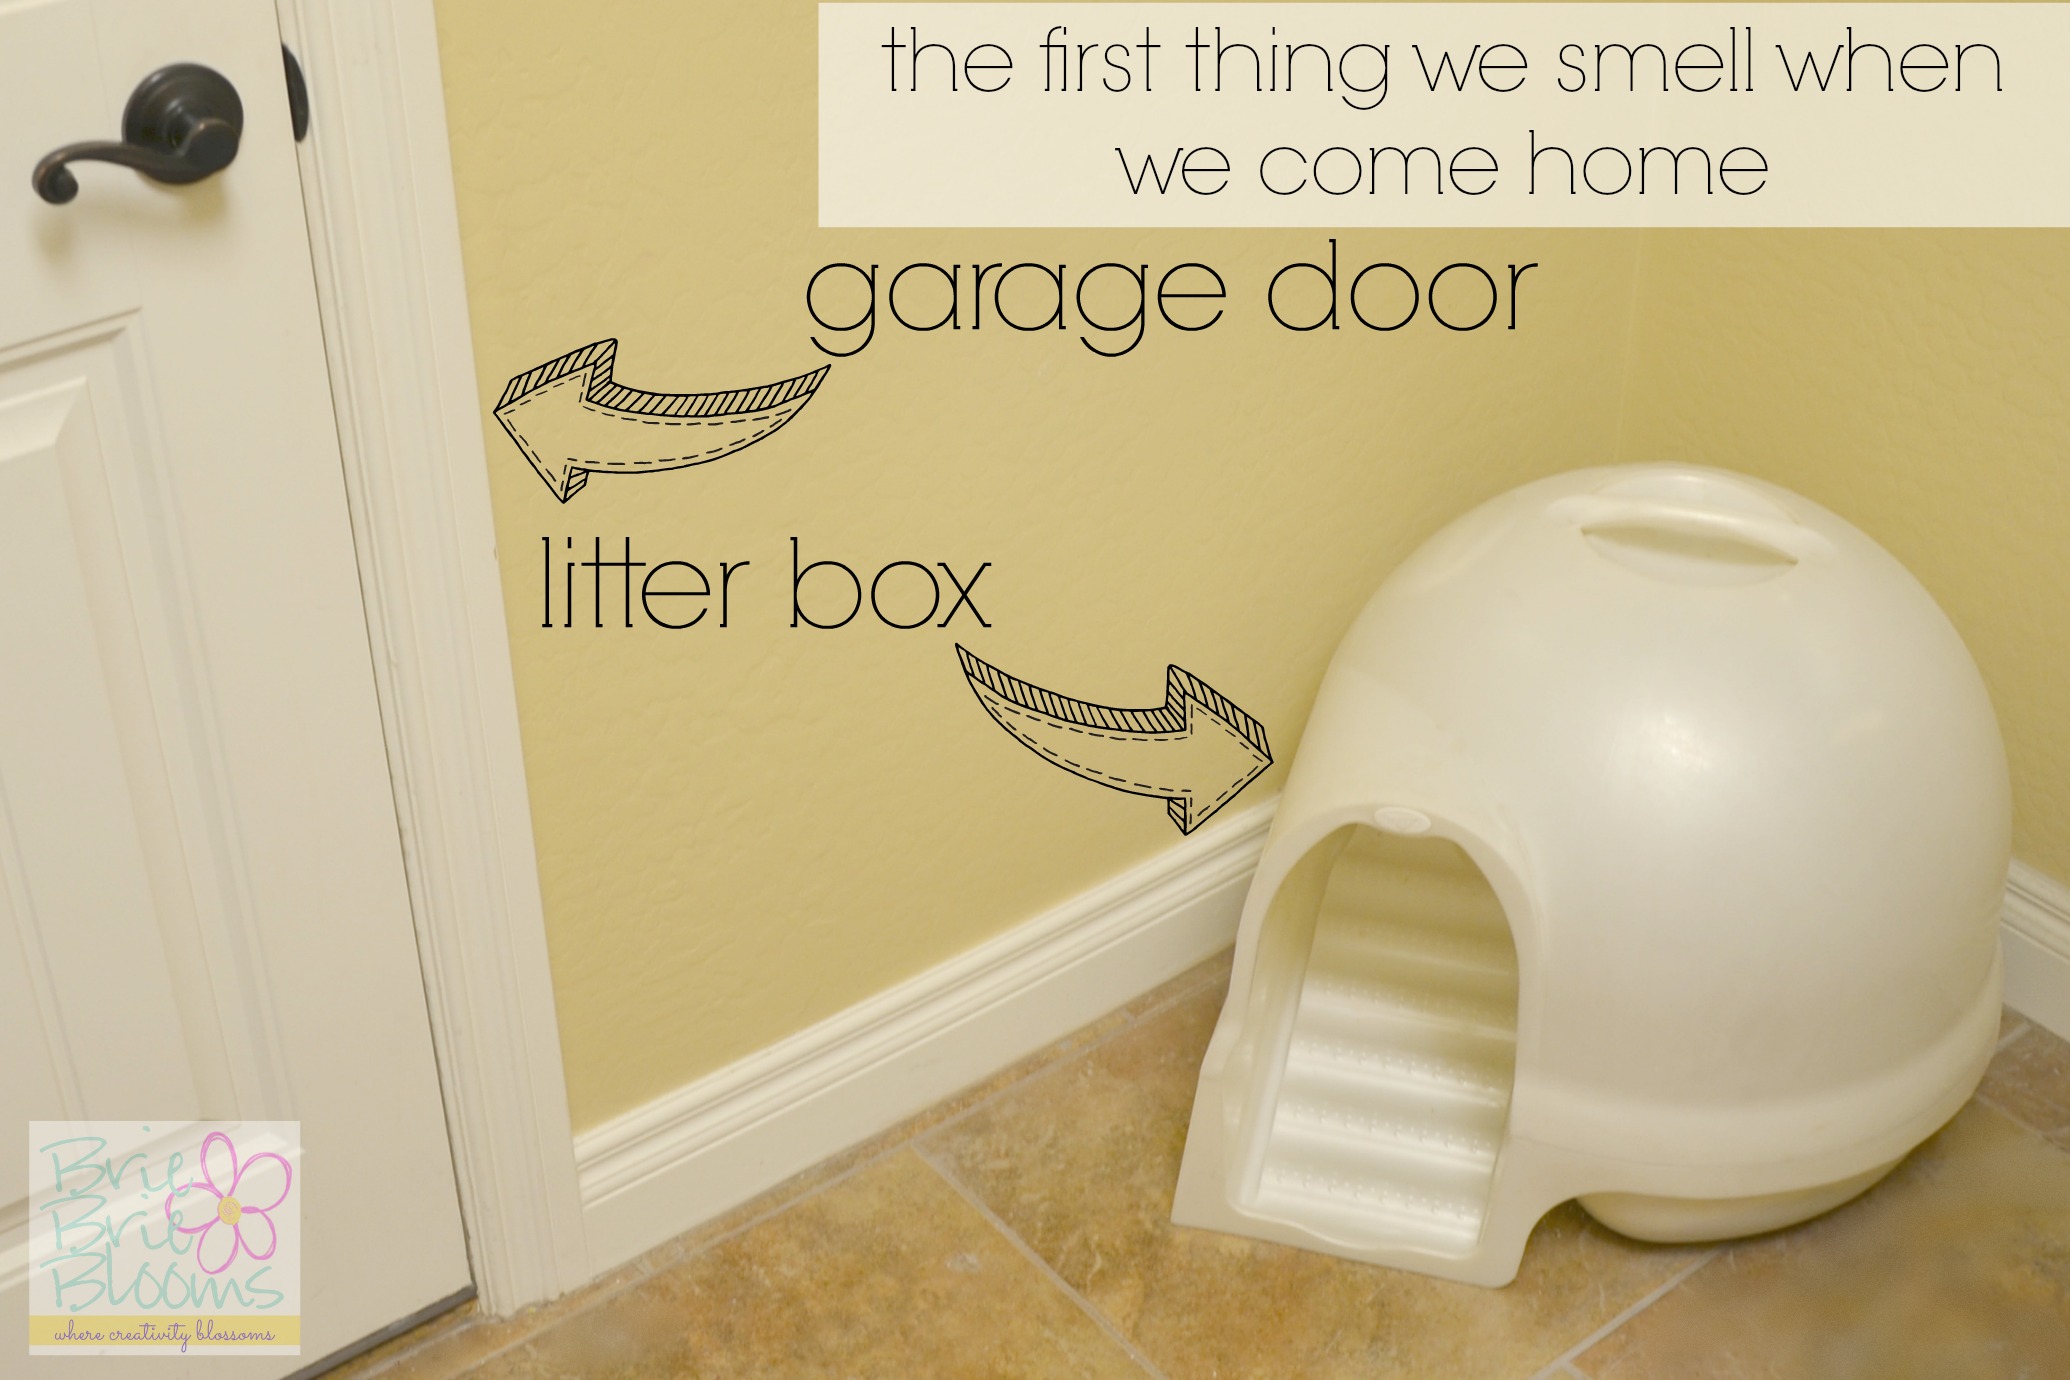 litter-box-next-to-garage-door